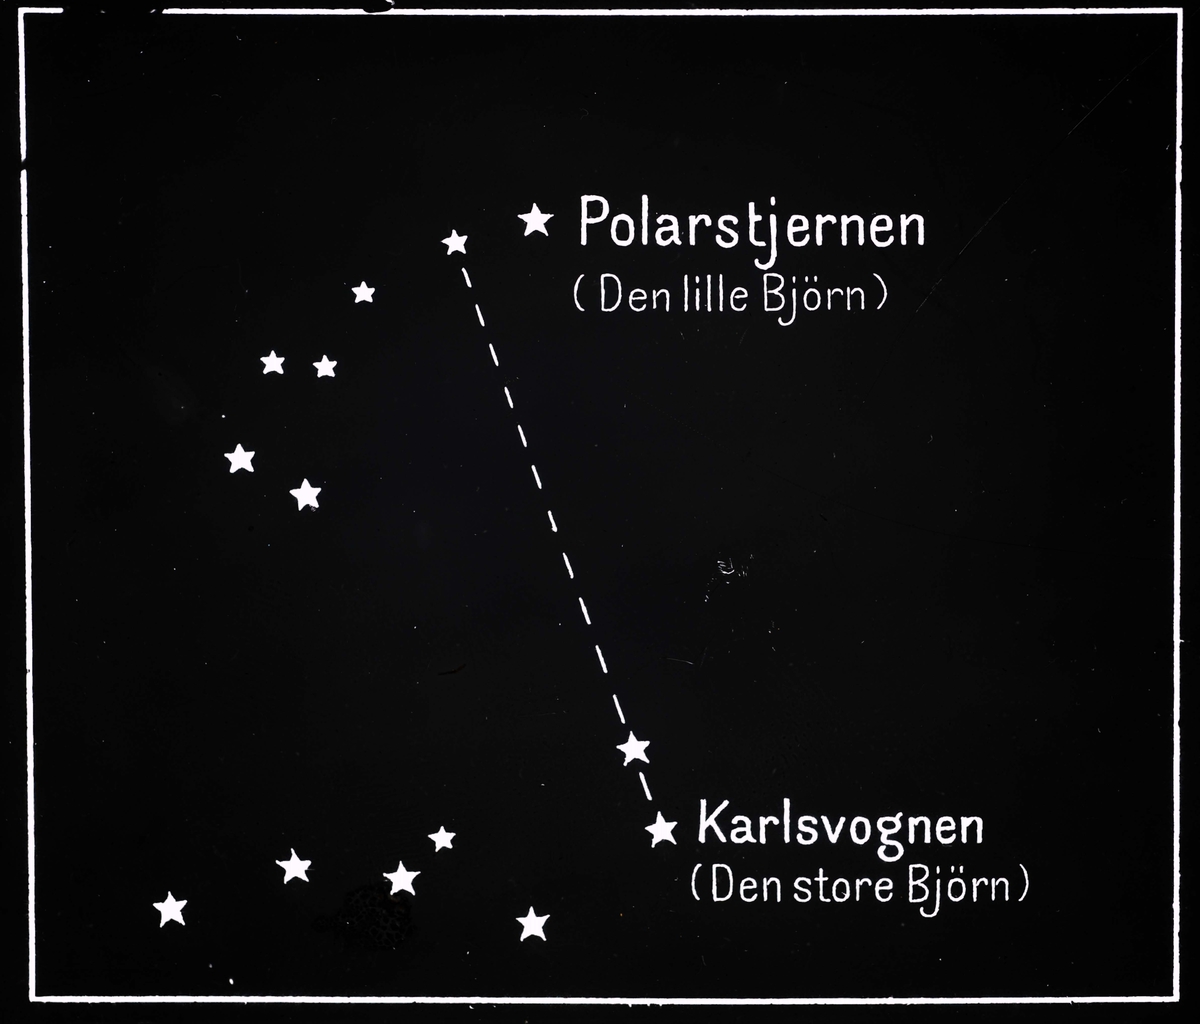 SIGNALER og INSTRUMENTER: Metode til å finne Polarstjernen.